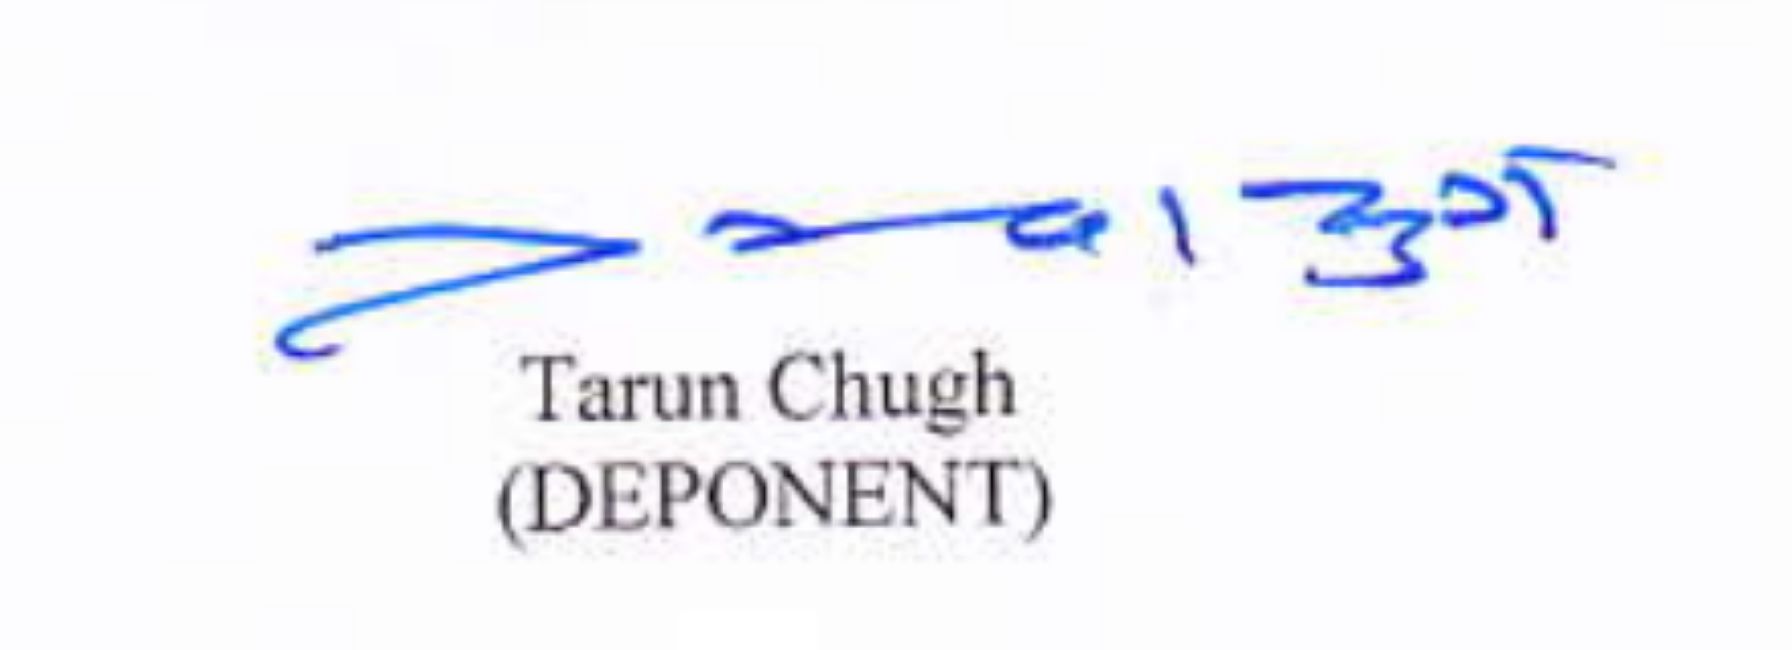 Tarun Chugh's signature